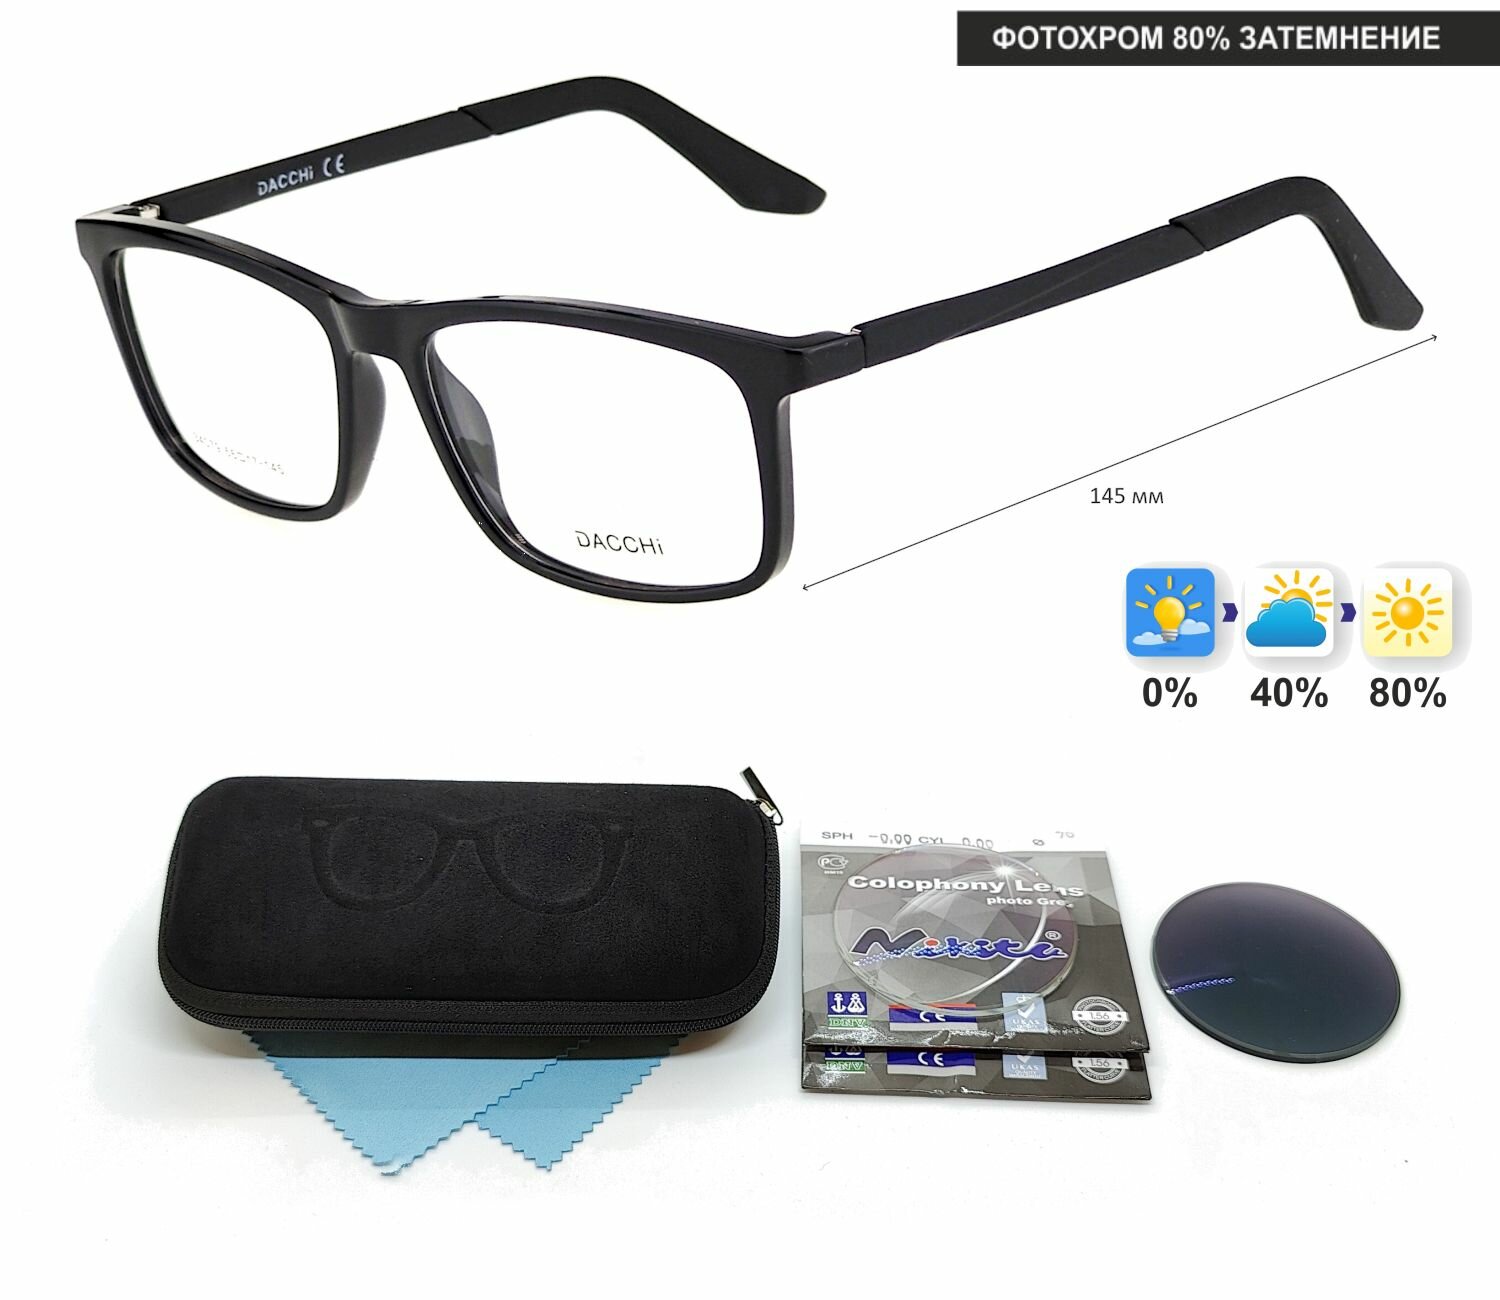 Фотохромные очки для чтения с футляром-змейка DACCHI мод. 34079 Цвет 2 с линзами NIKITA 1.56 Colophony GRAY, HMC+ +1.00 РЦ 66-68